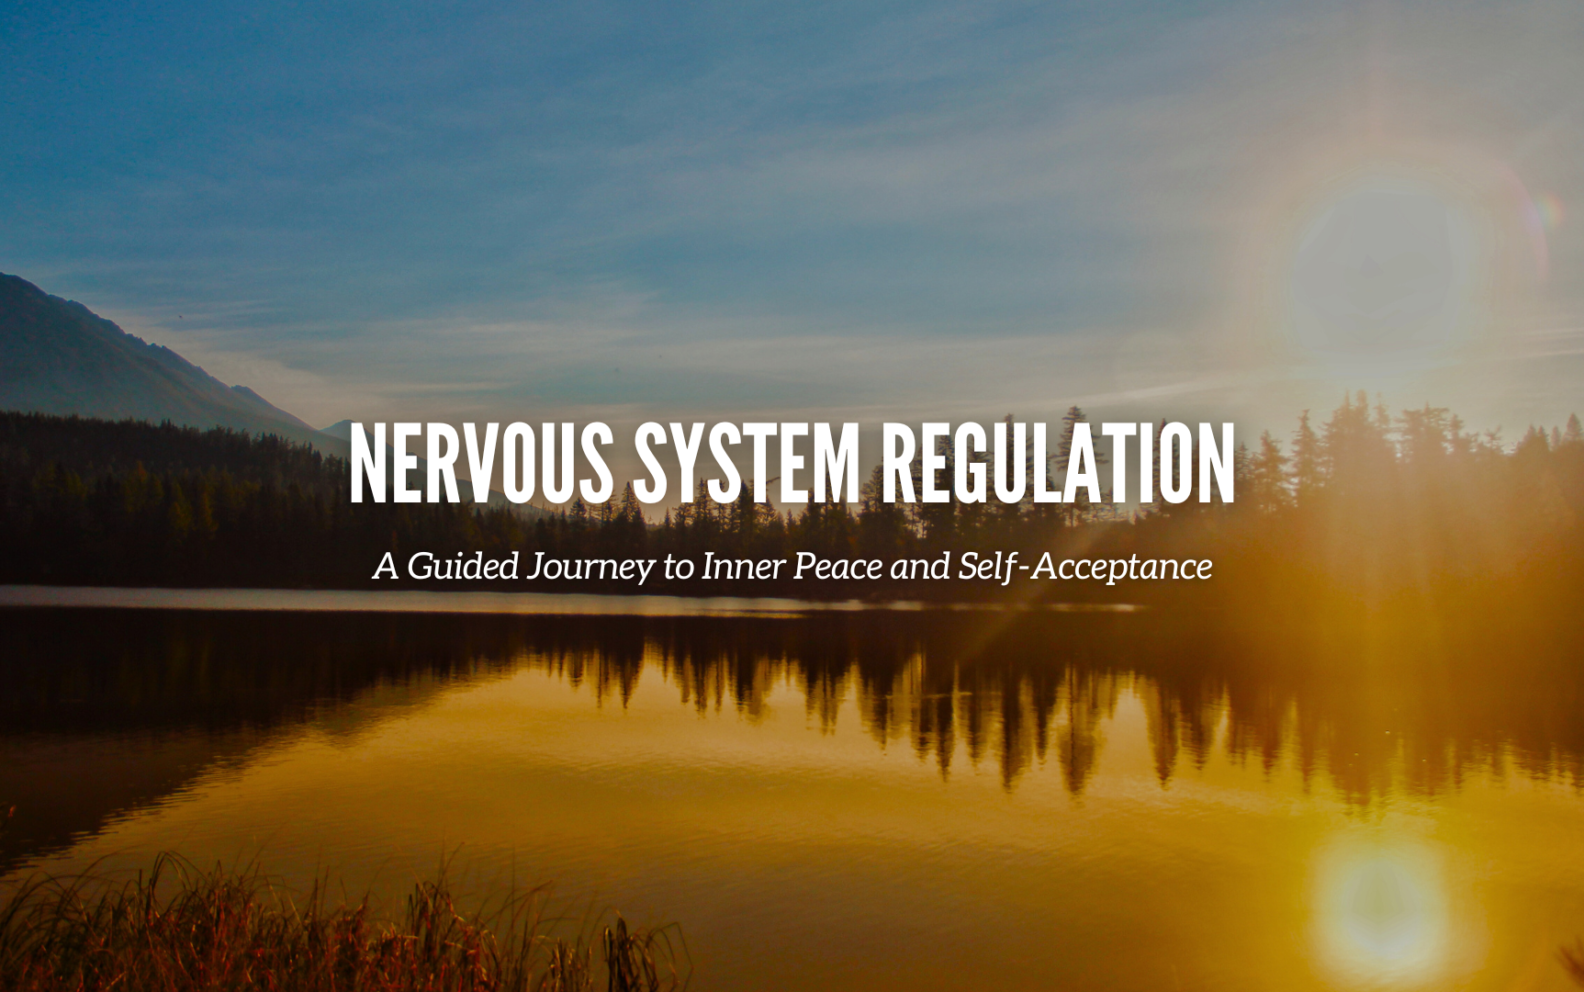 Nervous System Regulation